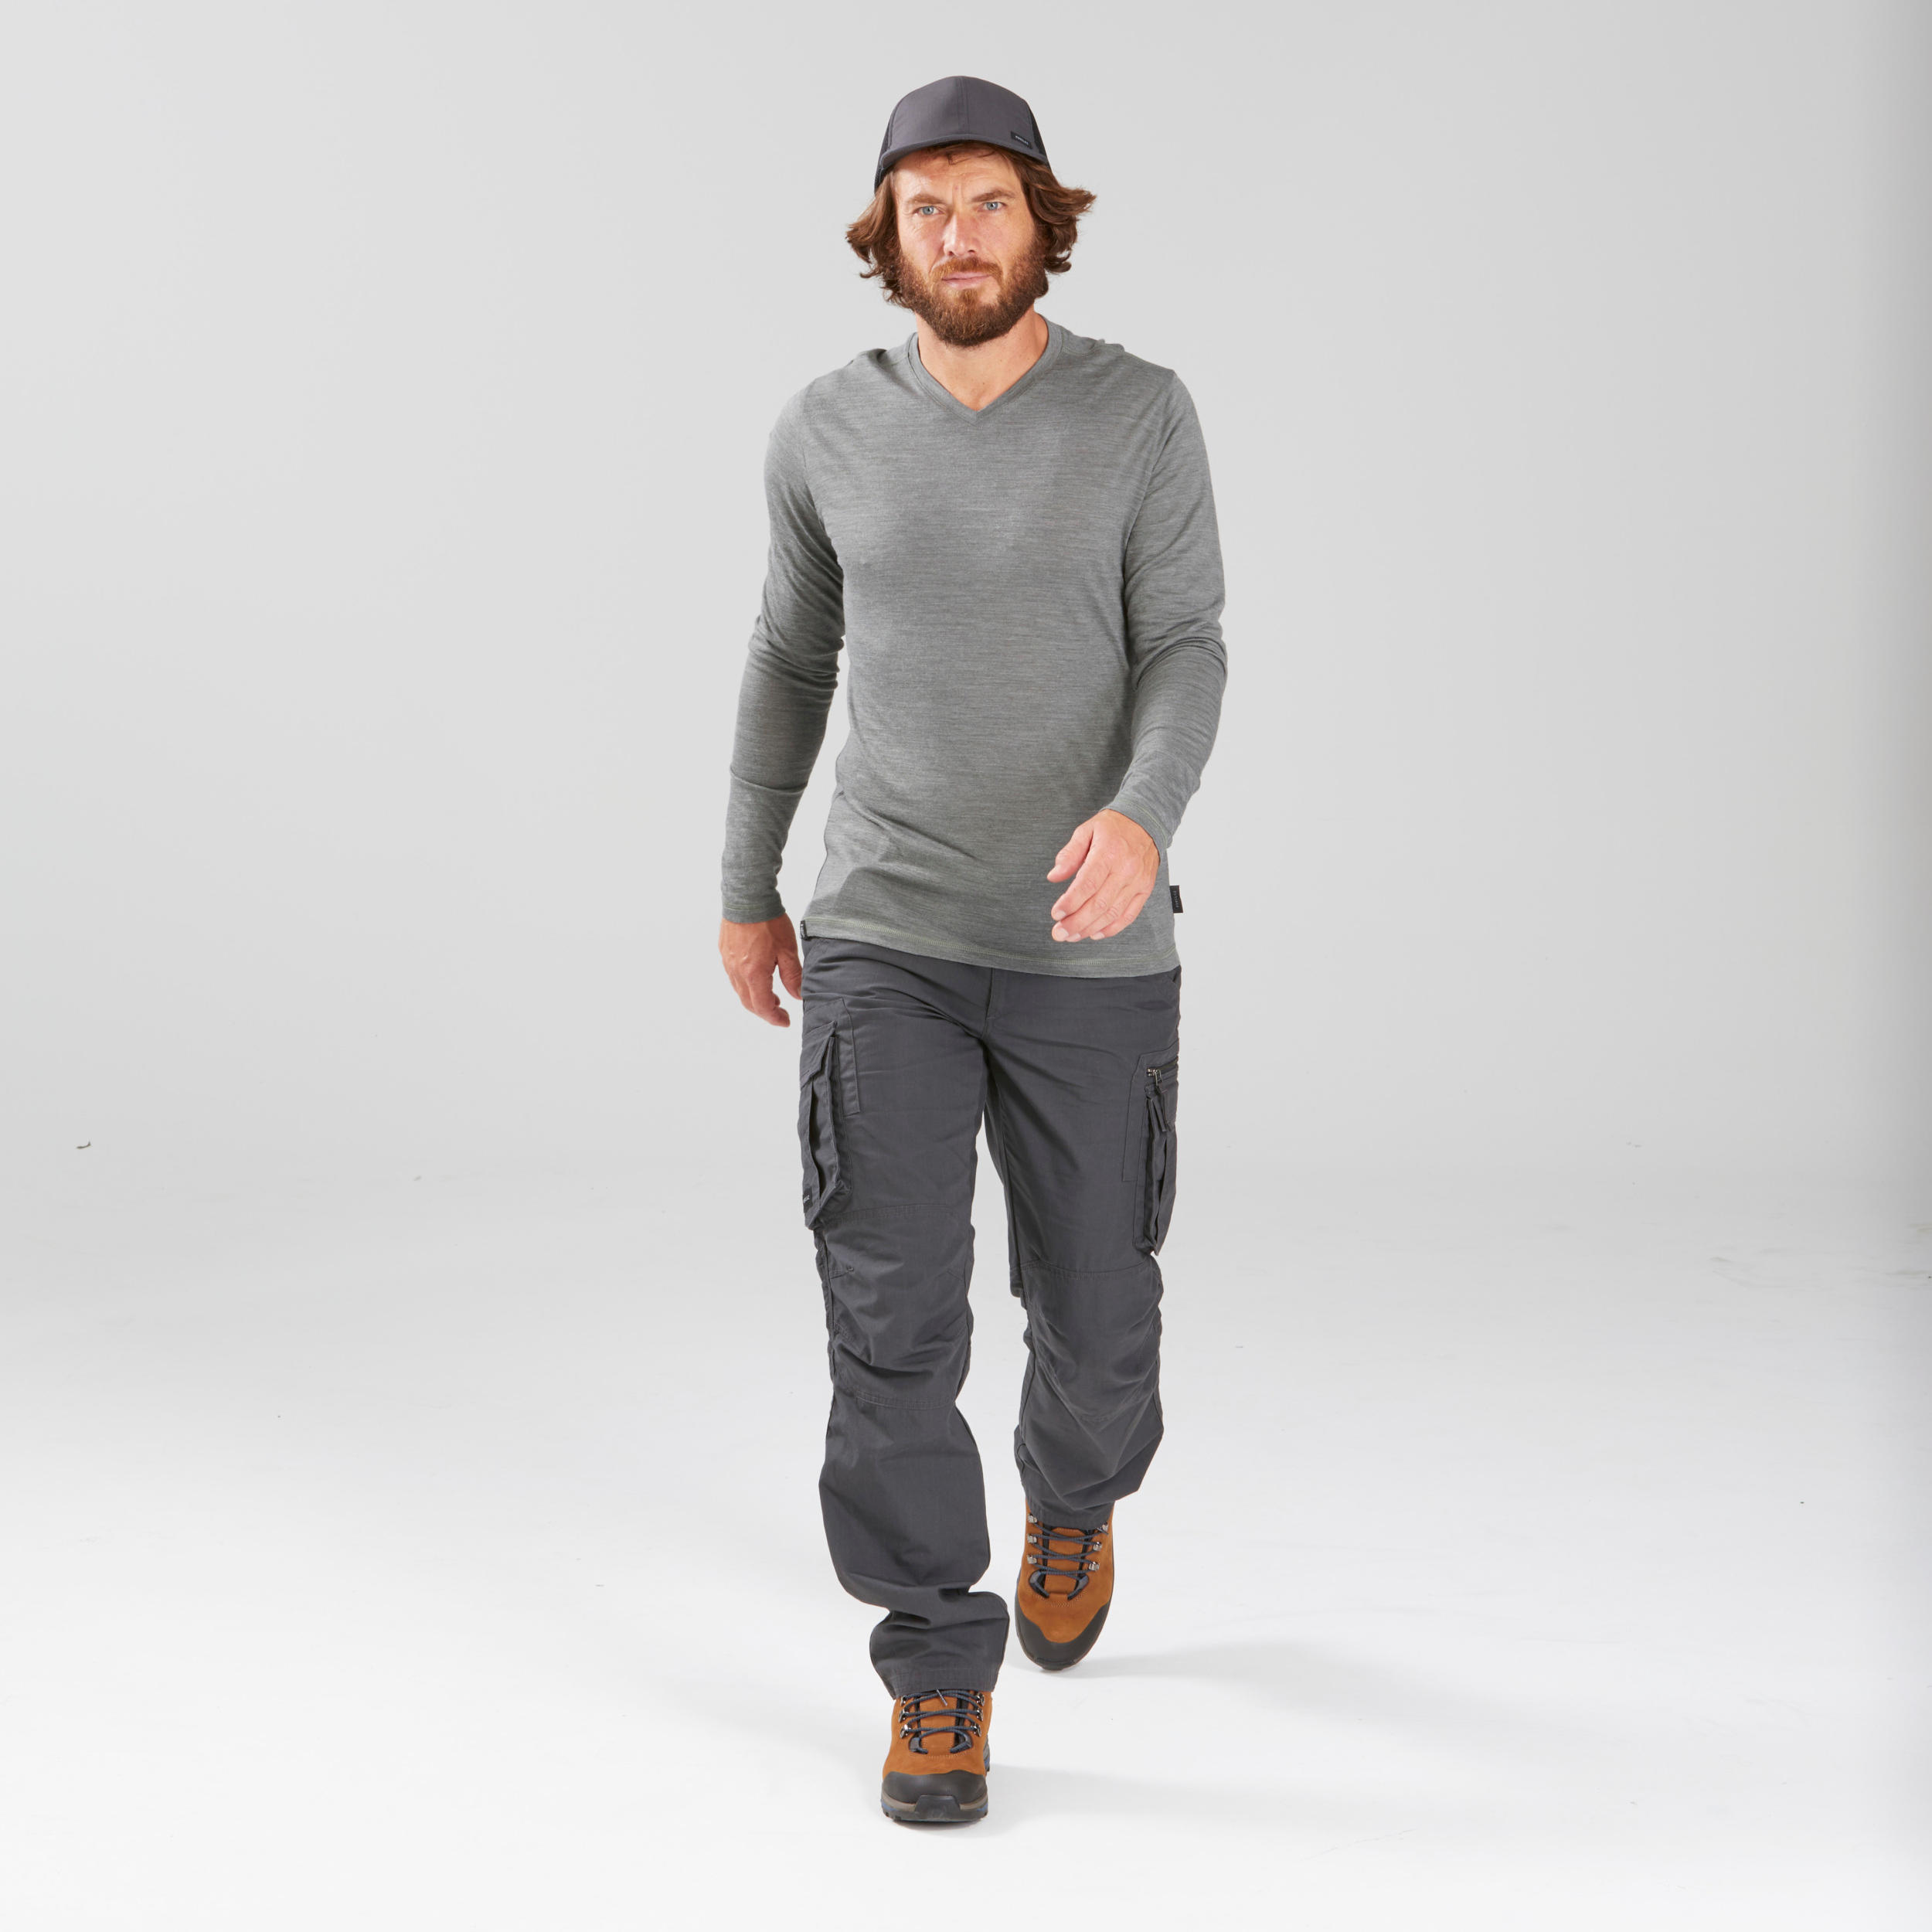 Pantalon de randonnée homme – Travel 100 gris - FORCLAZ